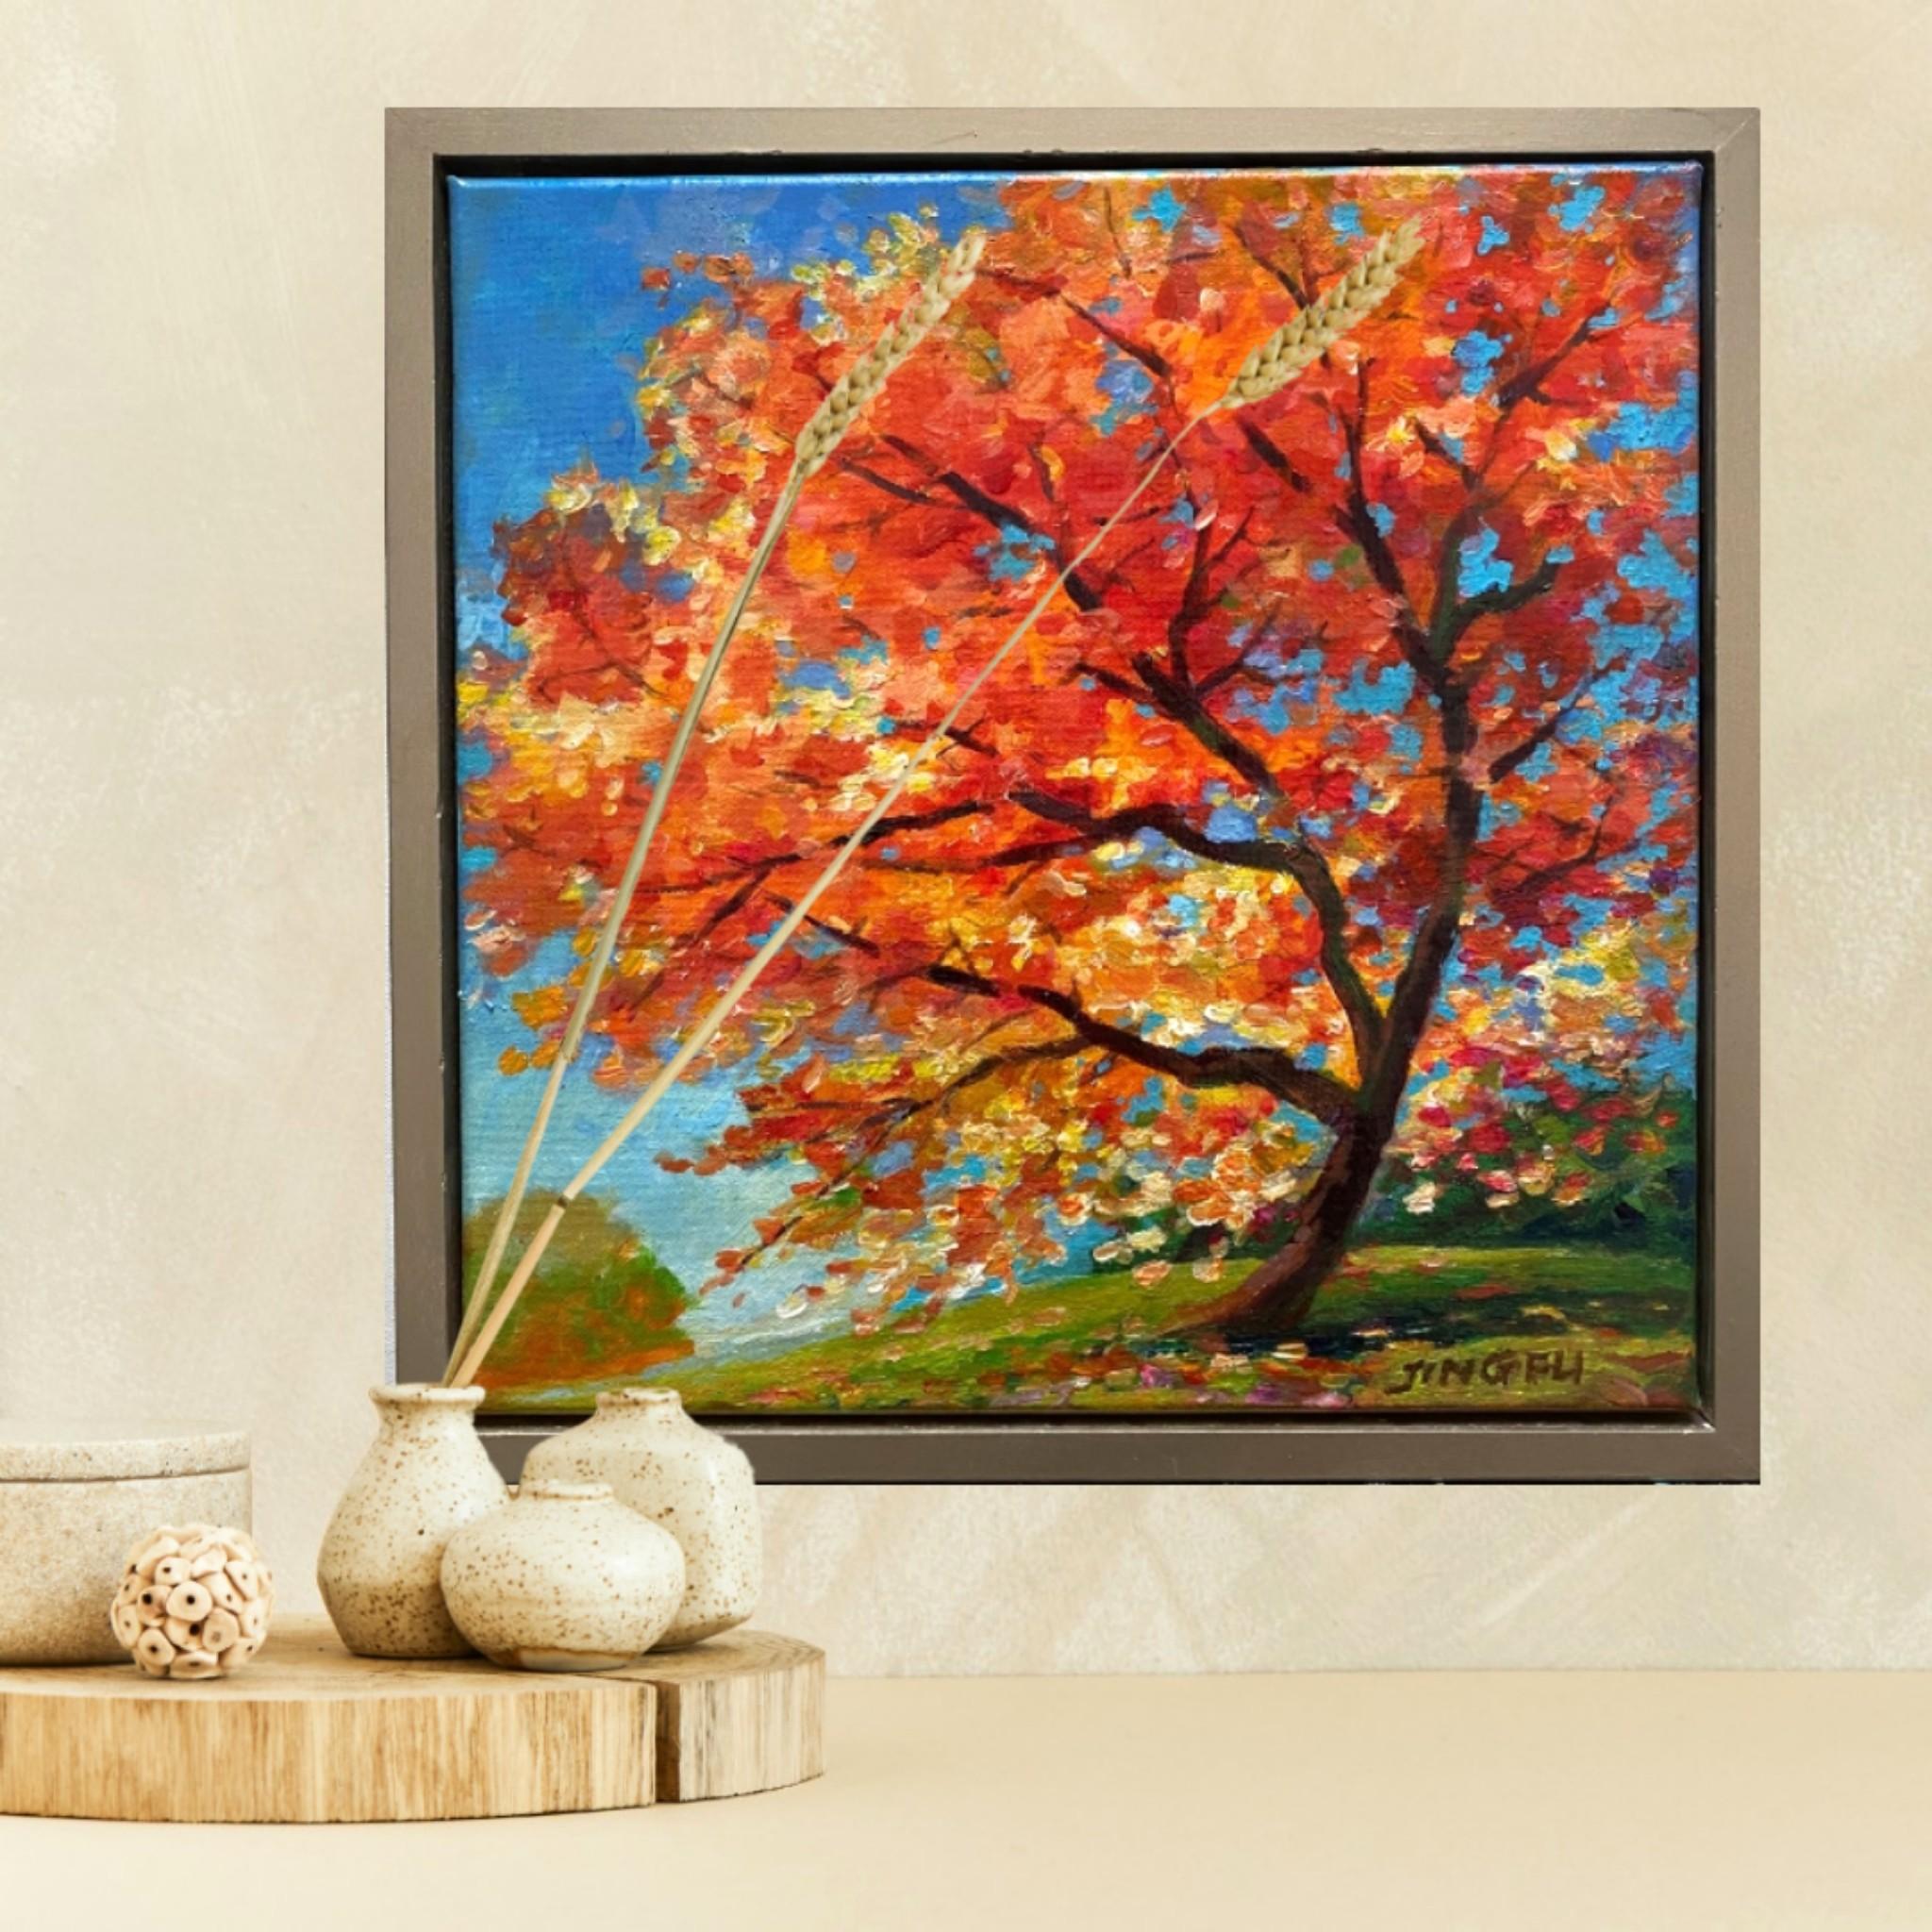 Dance in the Wind ist ein lebhaftes Acrylgemälde auf Leinwand, das einen Ahornbaum mit herbstlich gefärbten Blättern darstellt.
Wird gerahmt und hängefertig geliefert.

